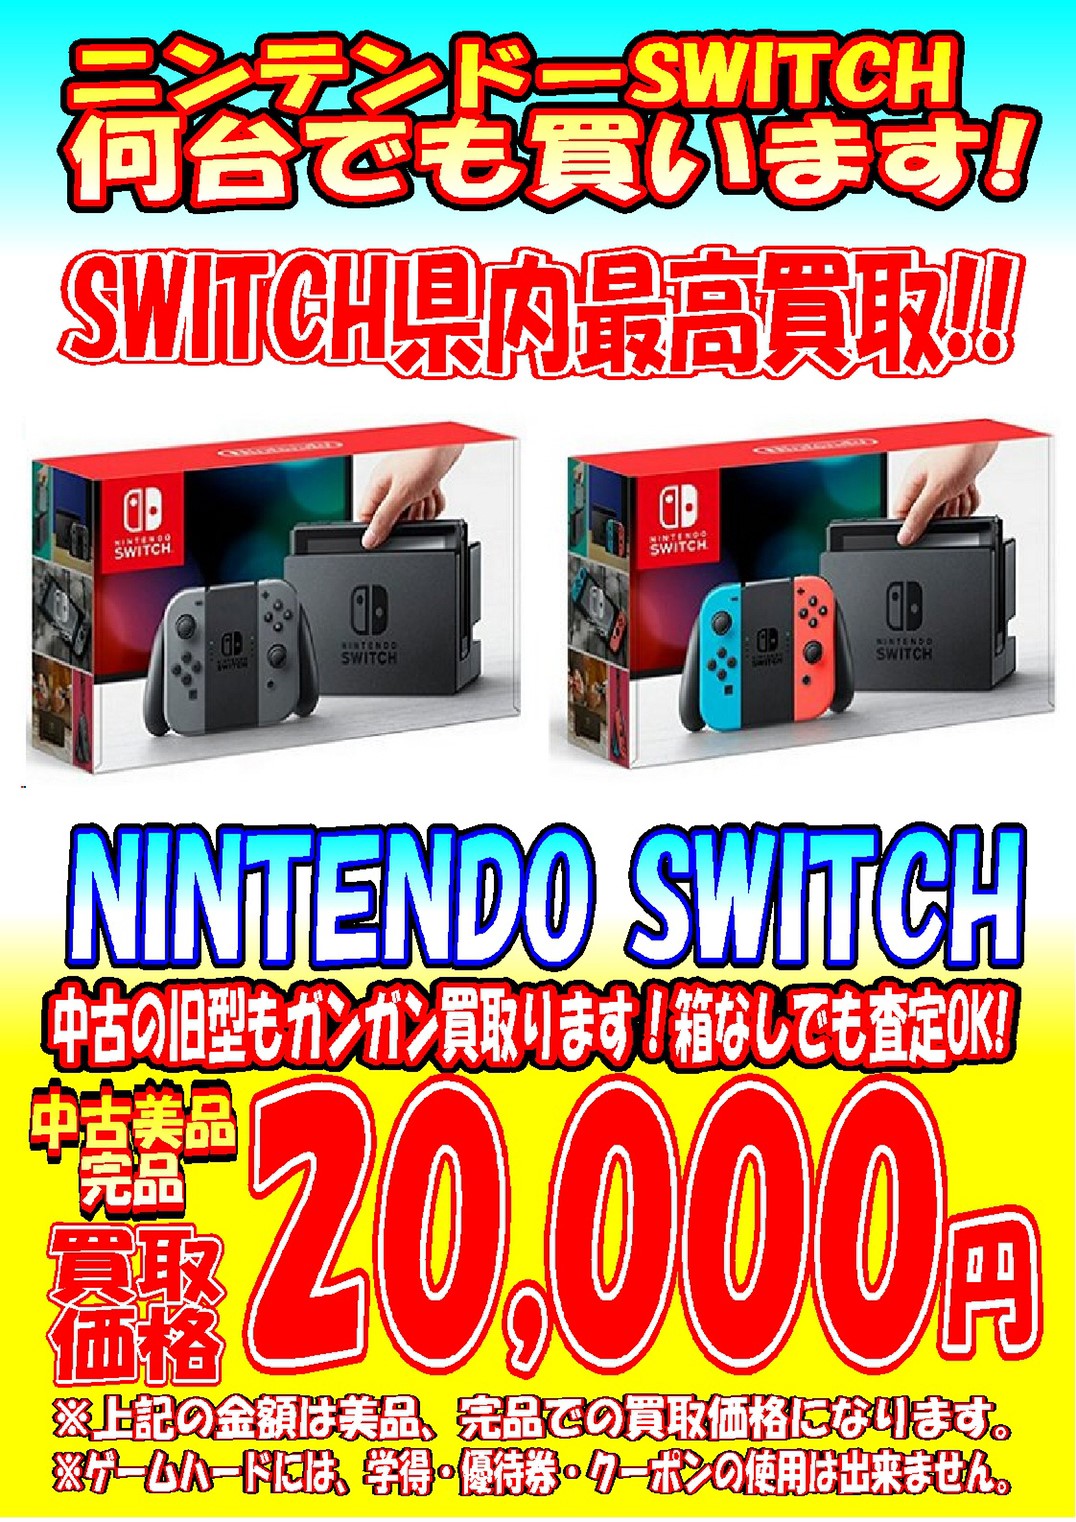 します Nintendo Switch - Nintendo Switch 箱無しの通販 by お茶っぱ